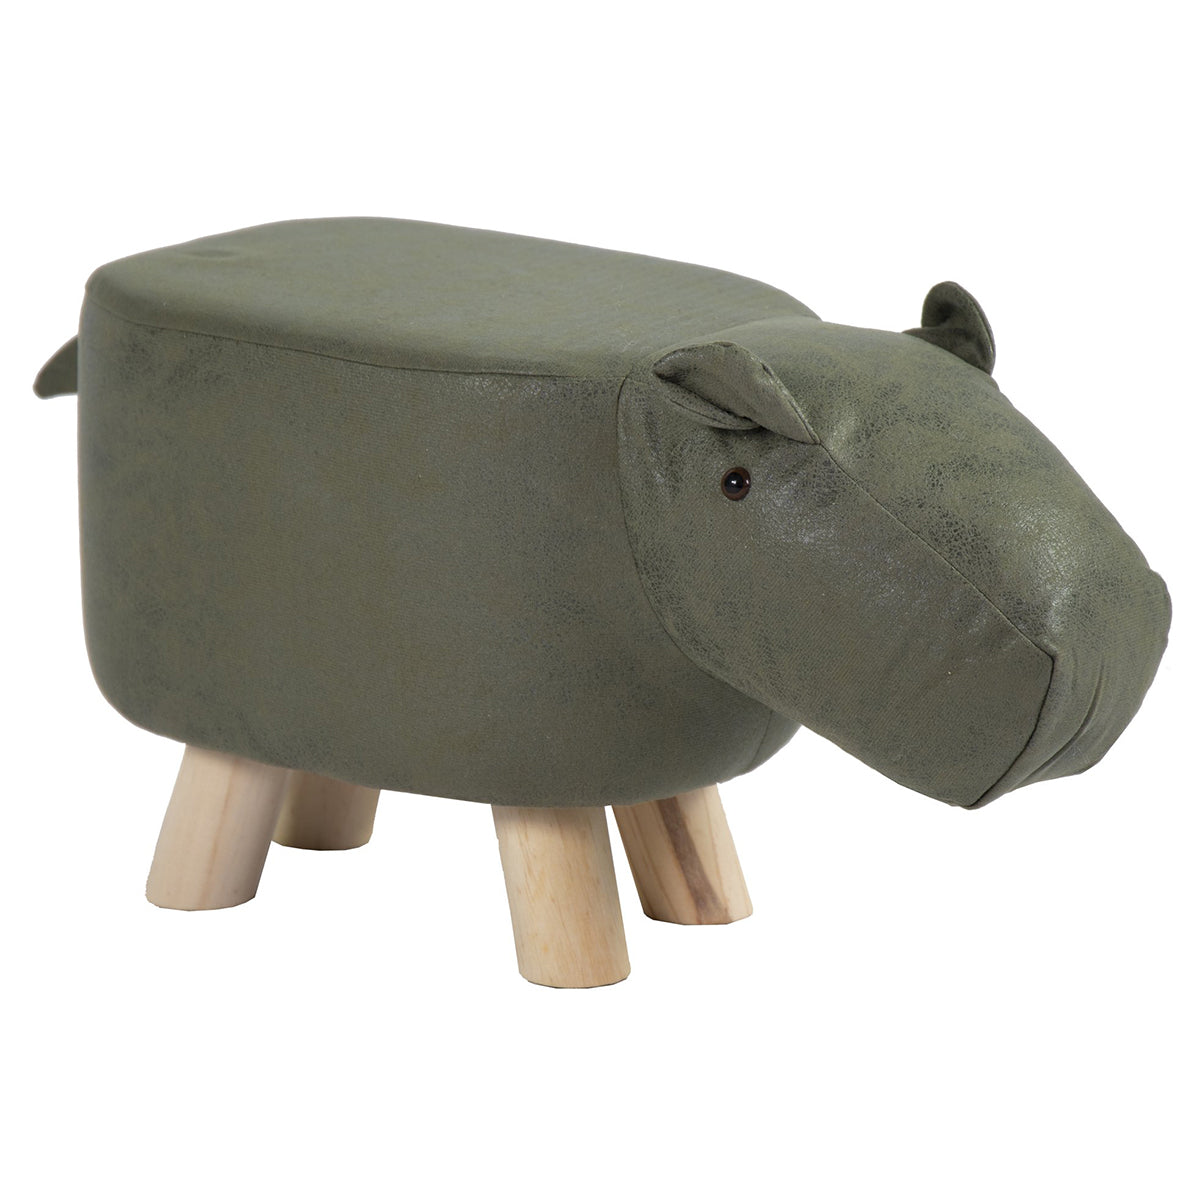 Tierhocker Hippo dunkelgrün Kinderhocker Tier Hocker Holz Kinder Sitzhocker Hippo